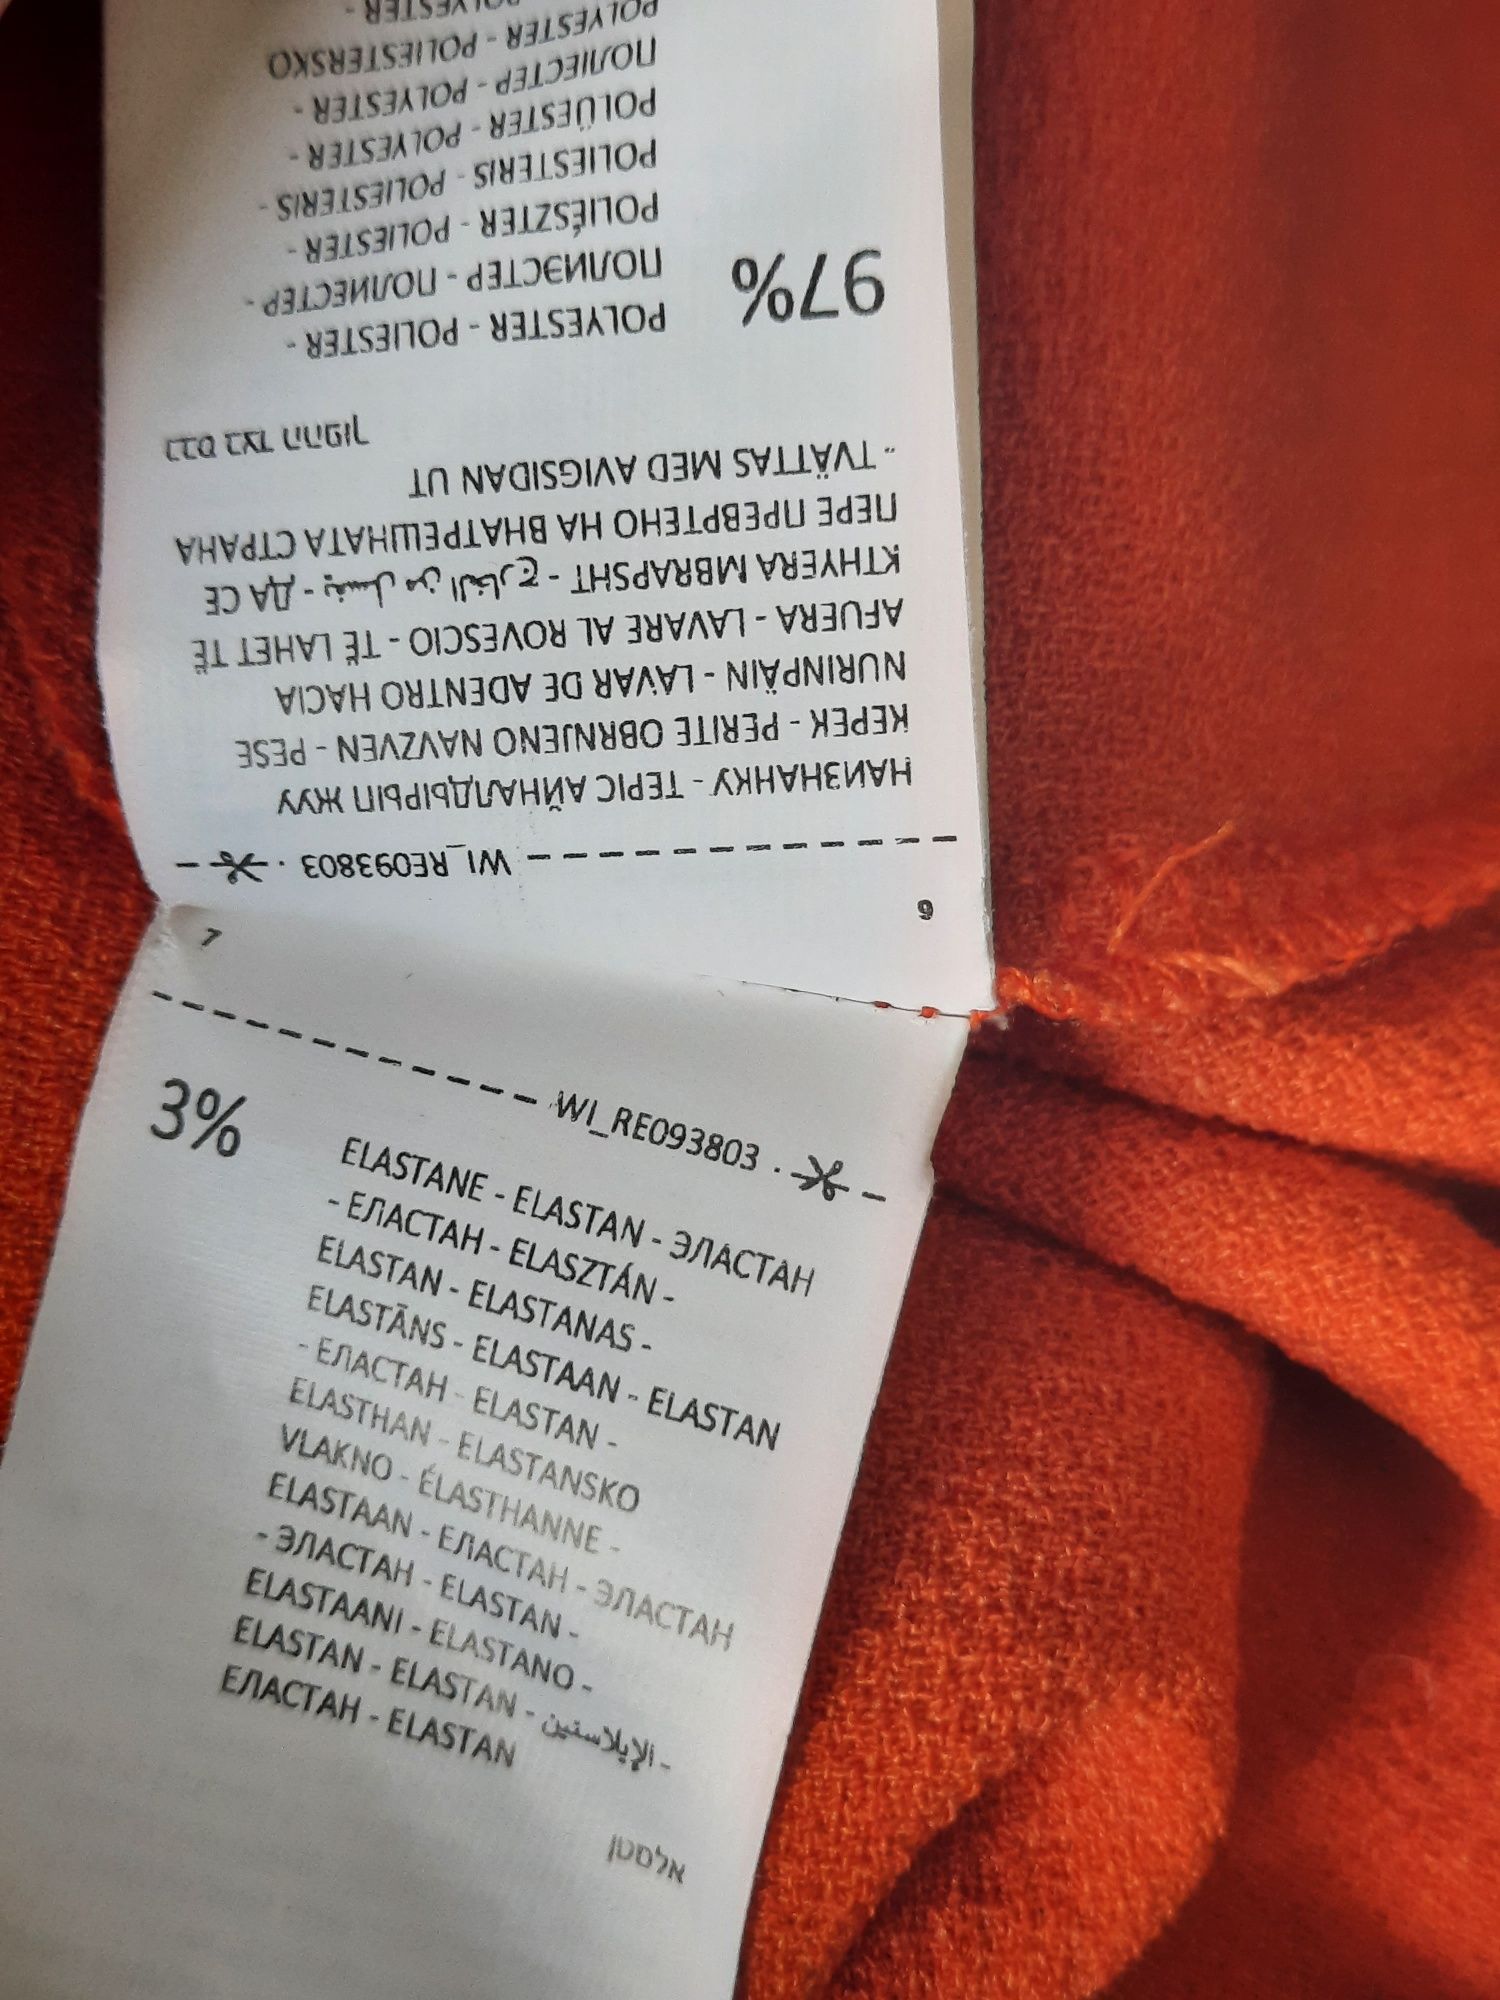 Koszula damska krótka z długim rękawem pomarańczowa Reserved r. S